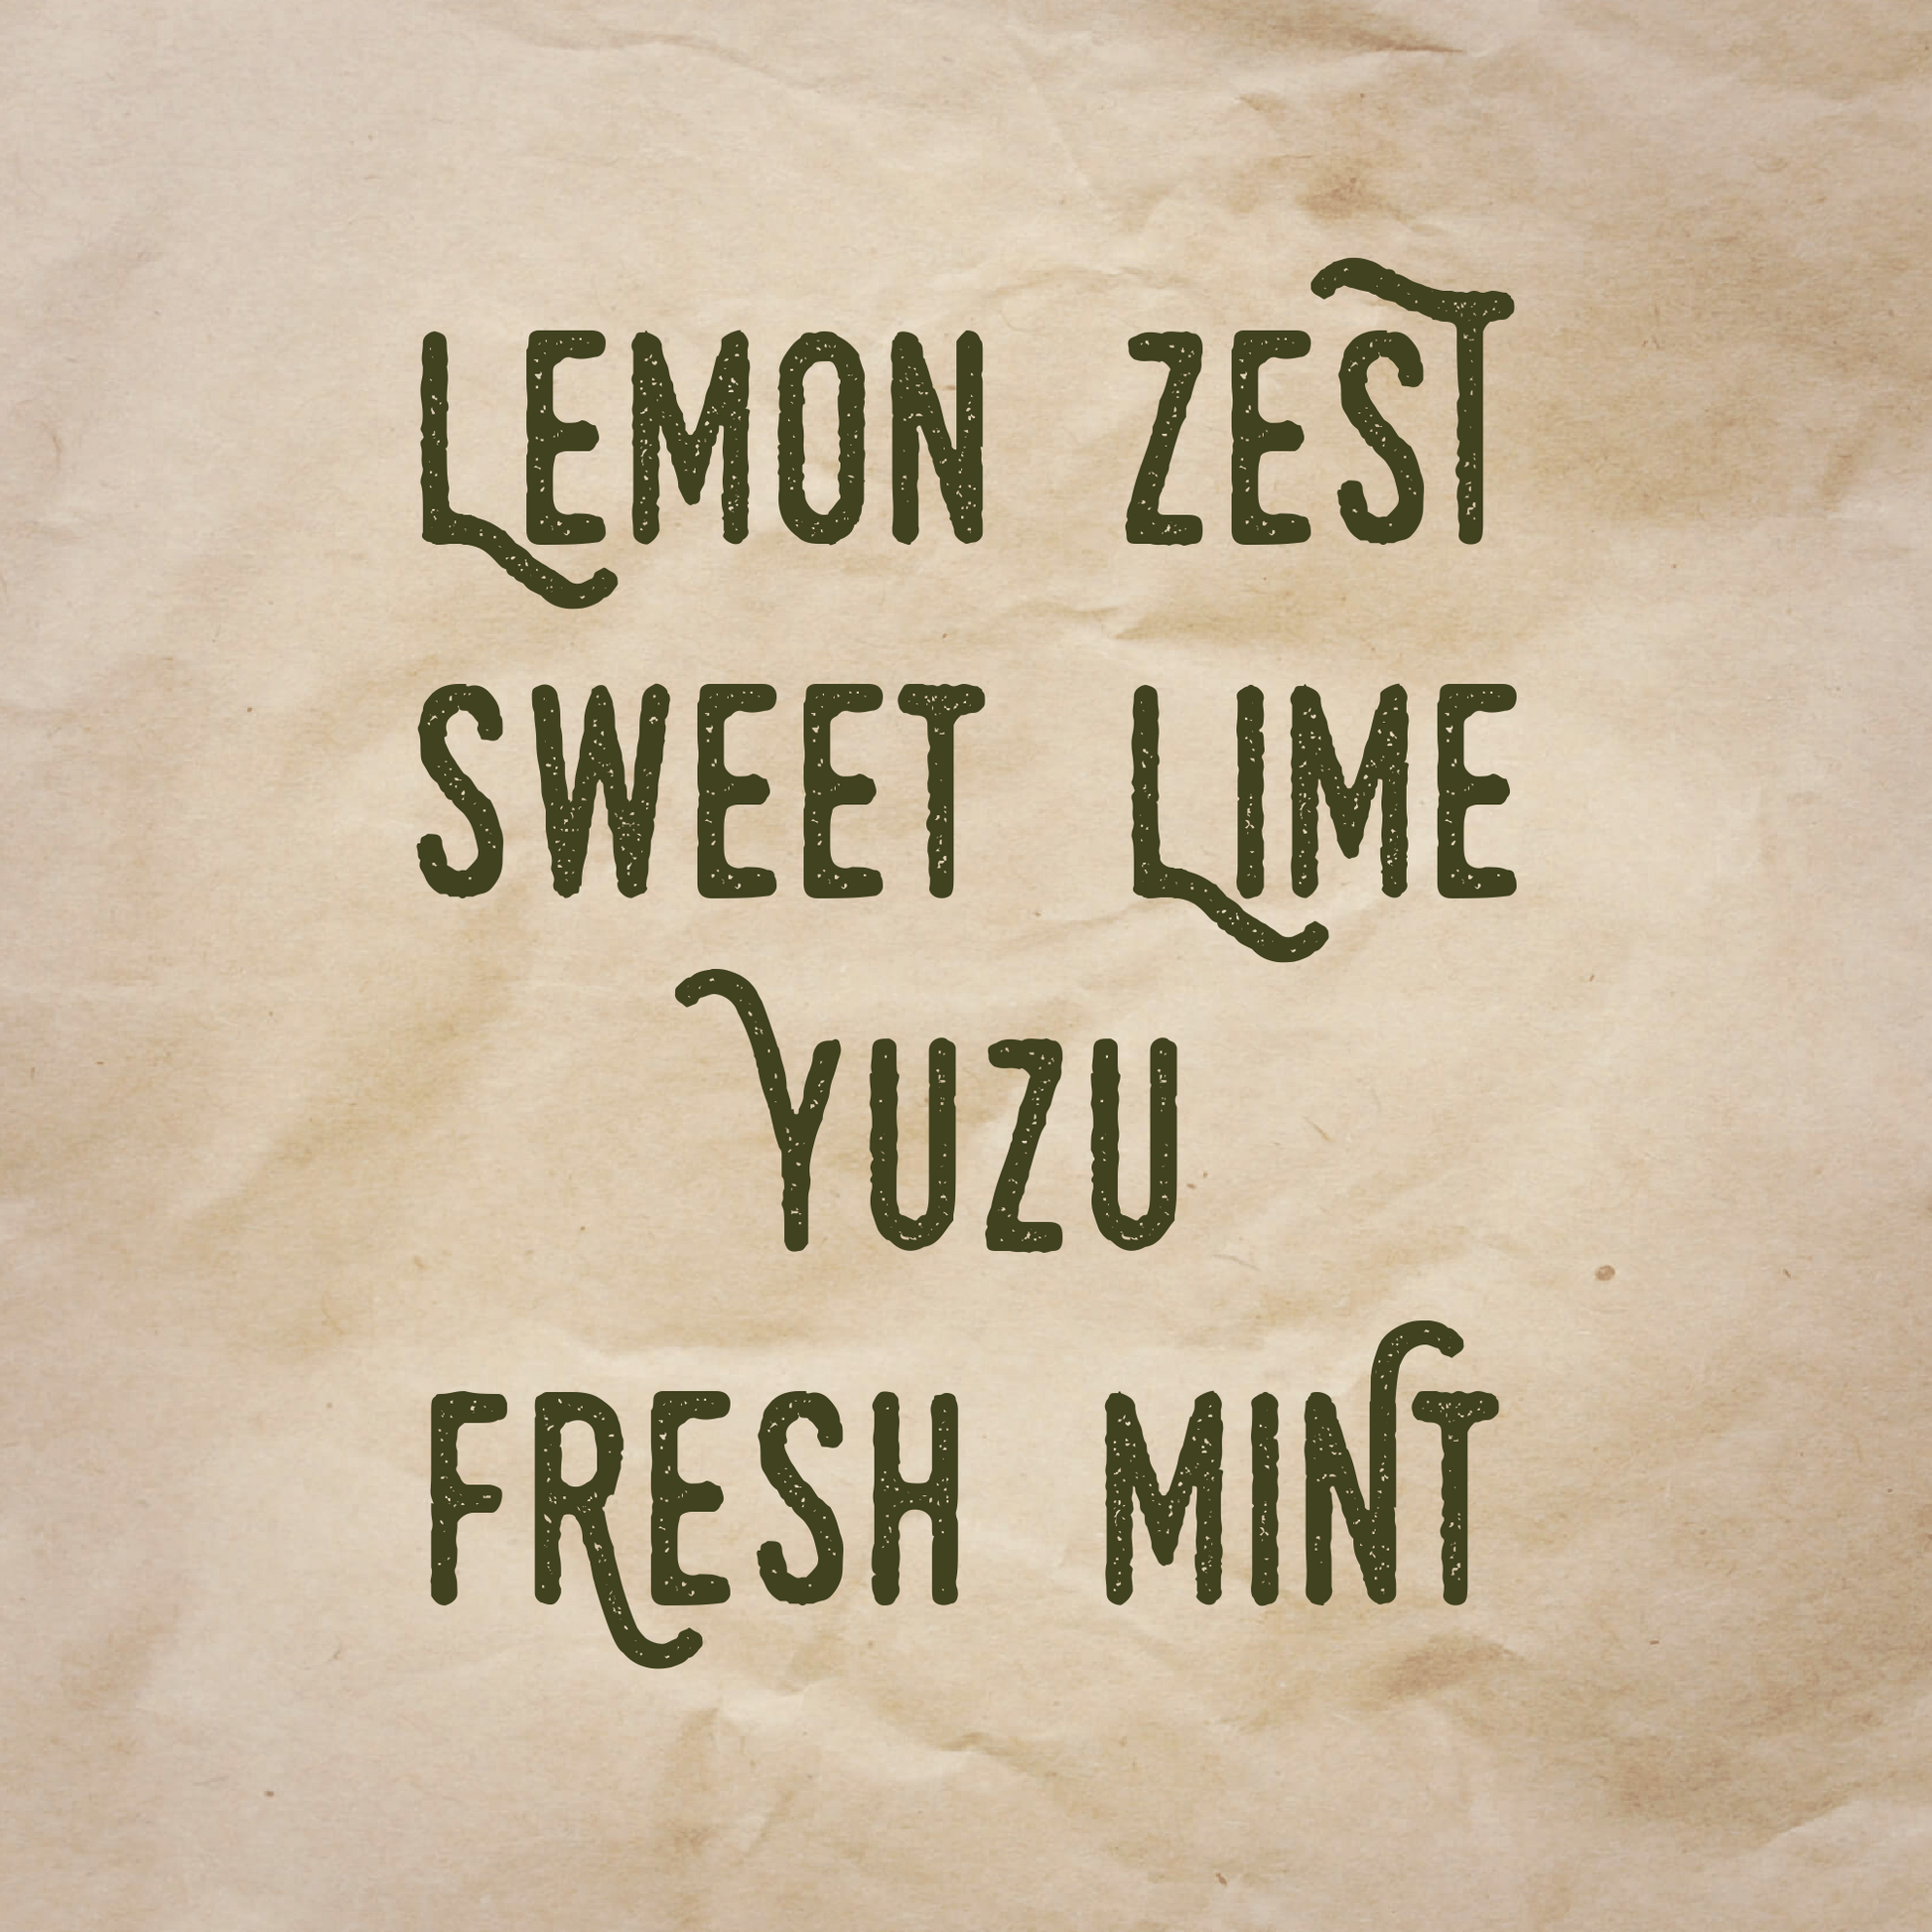 Cold Spots scent notes: Lemon zest, sweet lime, yuzu, and fresh mint.